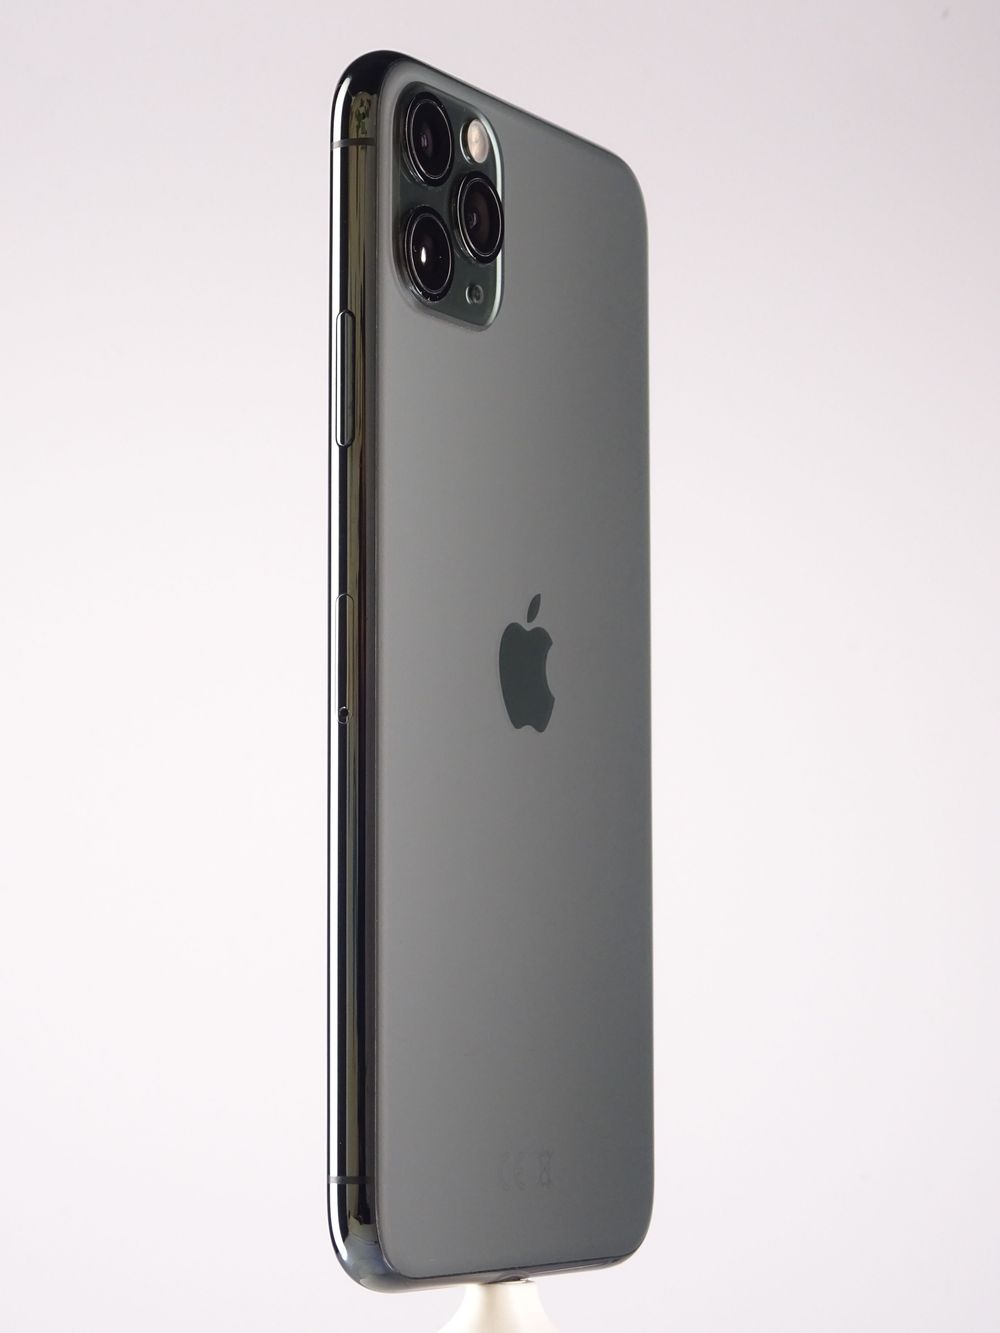 Telefon mobil Apple iPhone 11 Pro Max, Midnight Green, 512 GB,  Foarte Bun